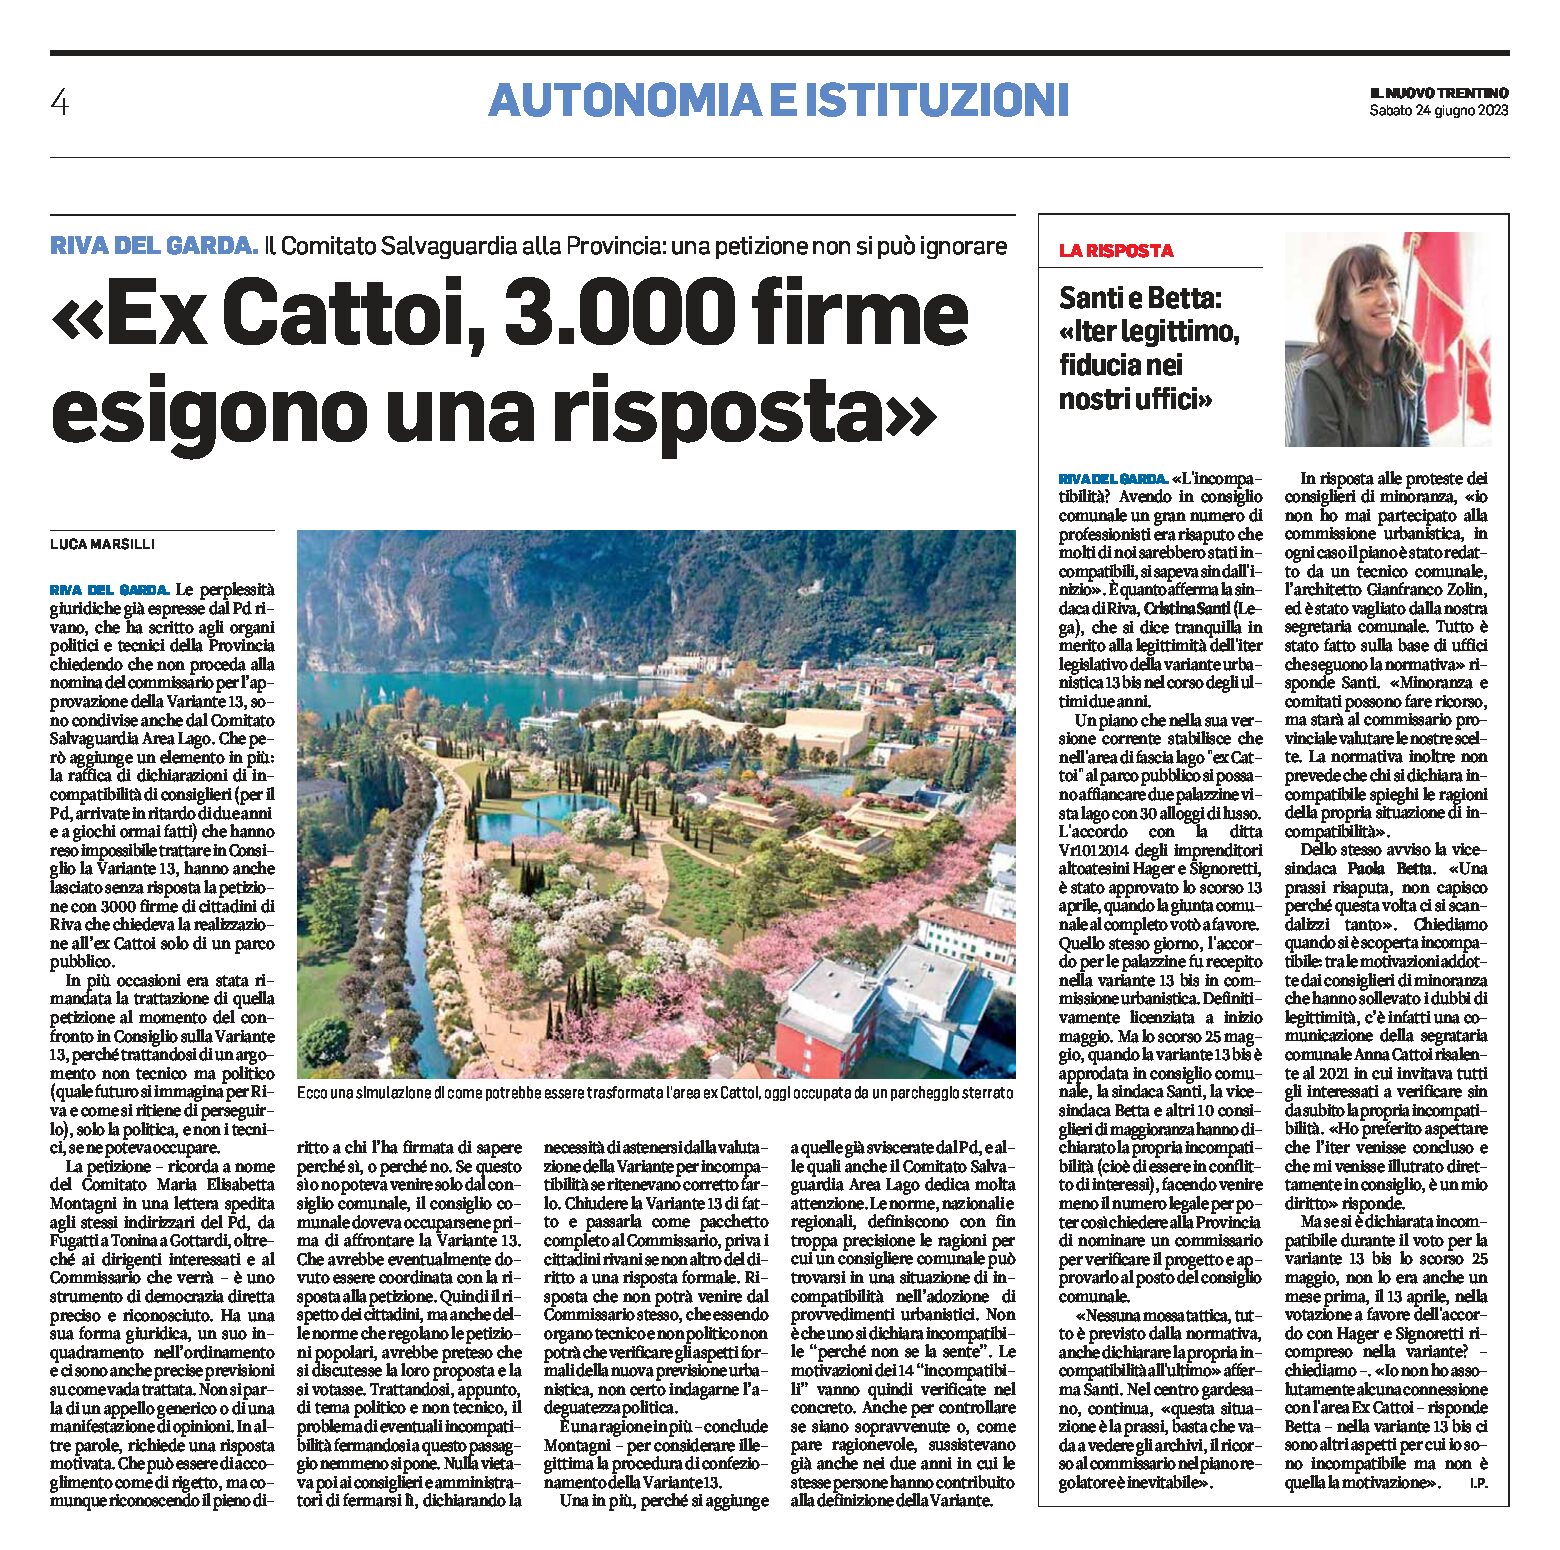 Riva: “ex Cattoi, 3.000 firme esigono una risposta”